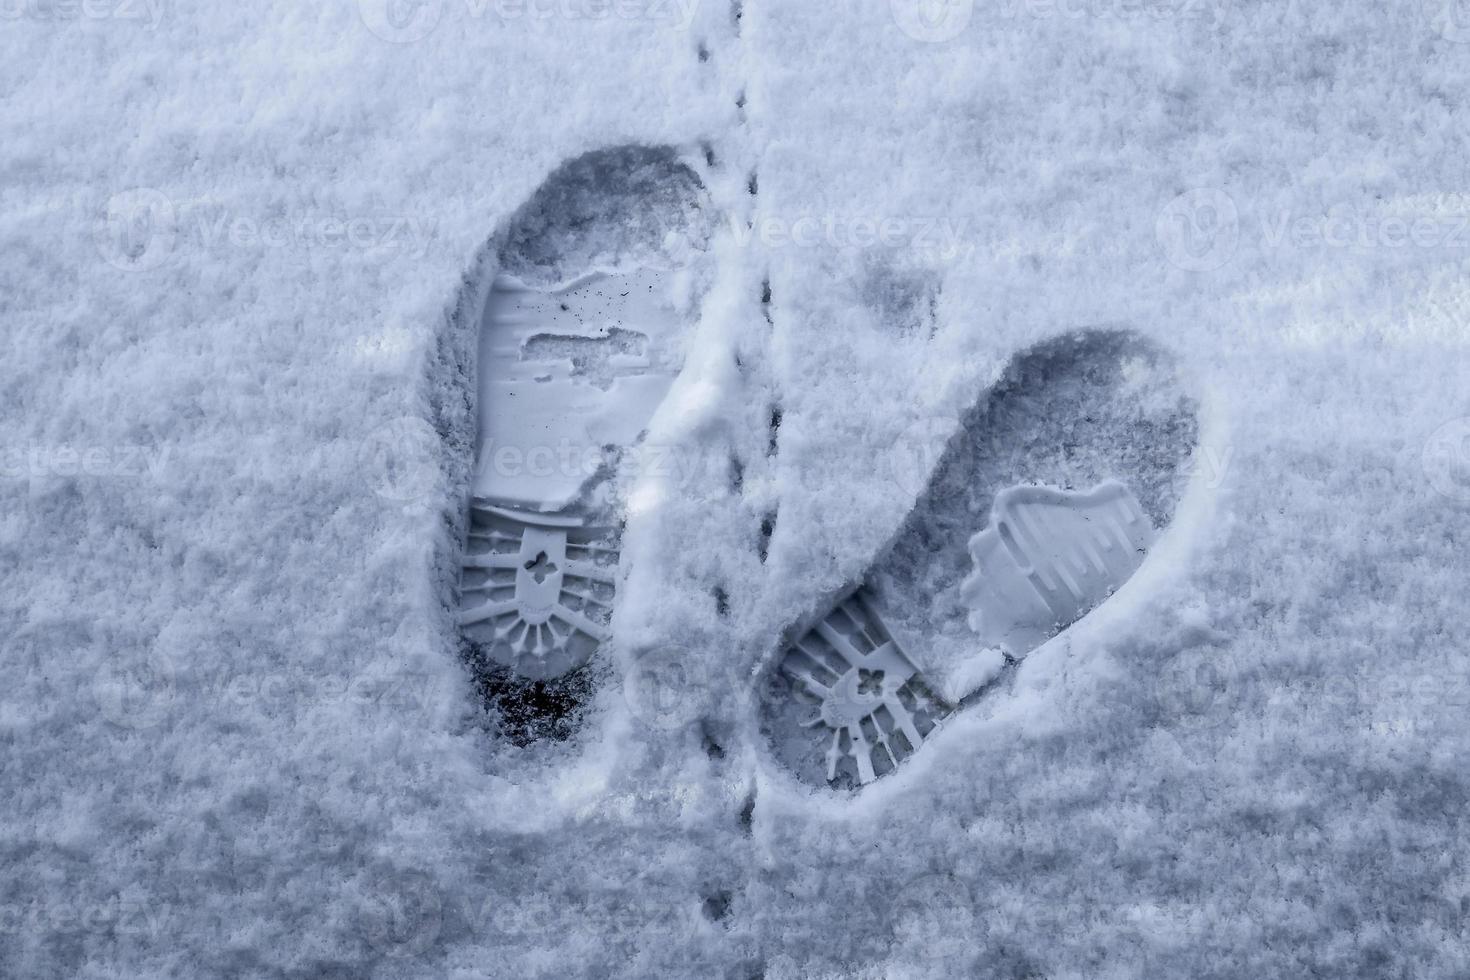 traces de chaussures masculines dans la neige blanche fraîche en hiver photo